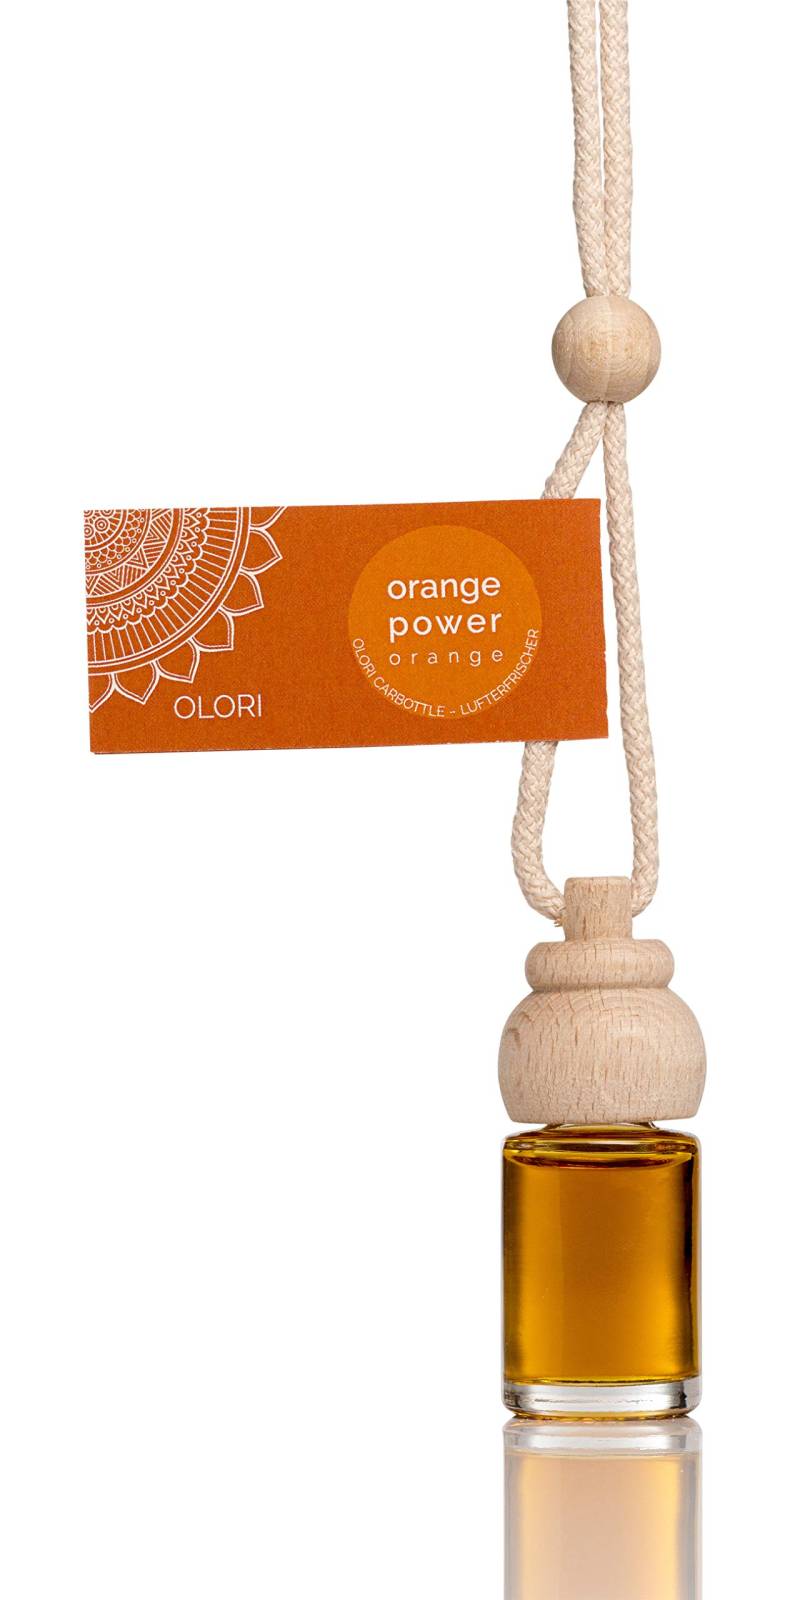 Lufterfrischer Orange I Duftspender Auto, Wäsche, Schrank I Essenz aus ätherischen Ölen I ergiebig & langanhaltend I 4 x 8 ml von Olori